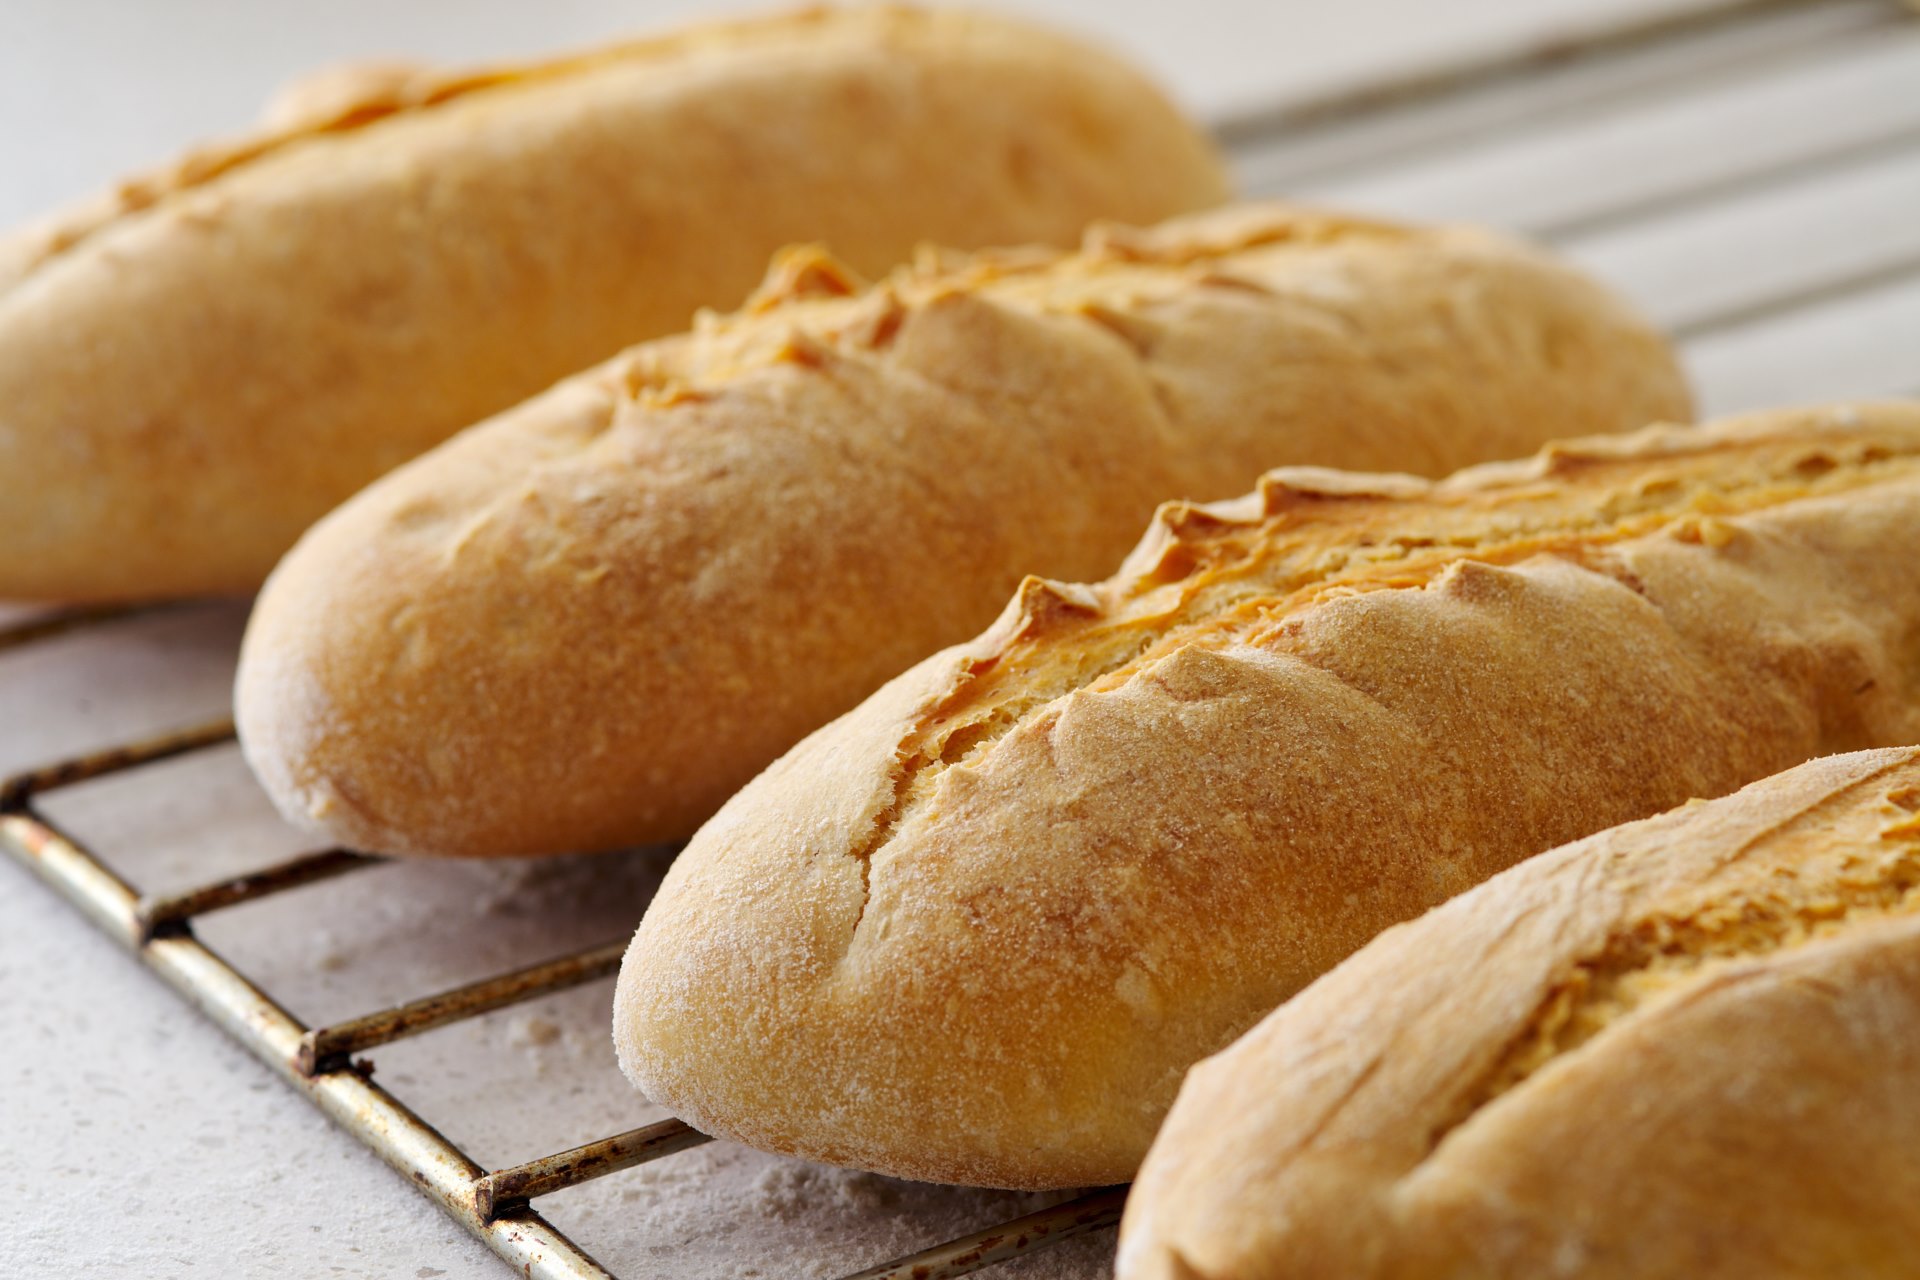 El pan no engorda si se sabe comer y es de calidad